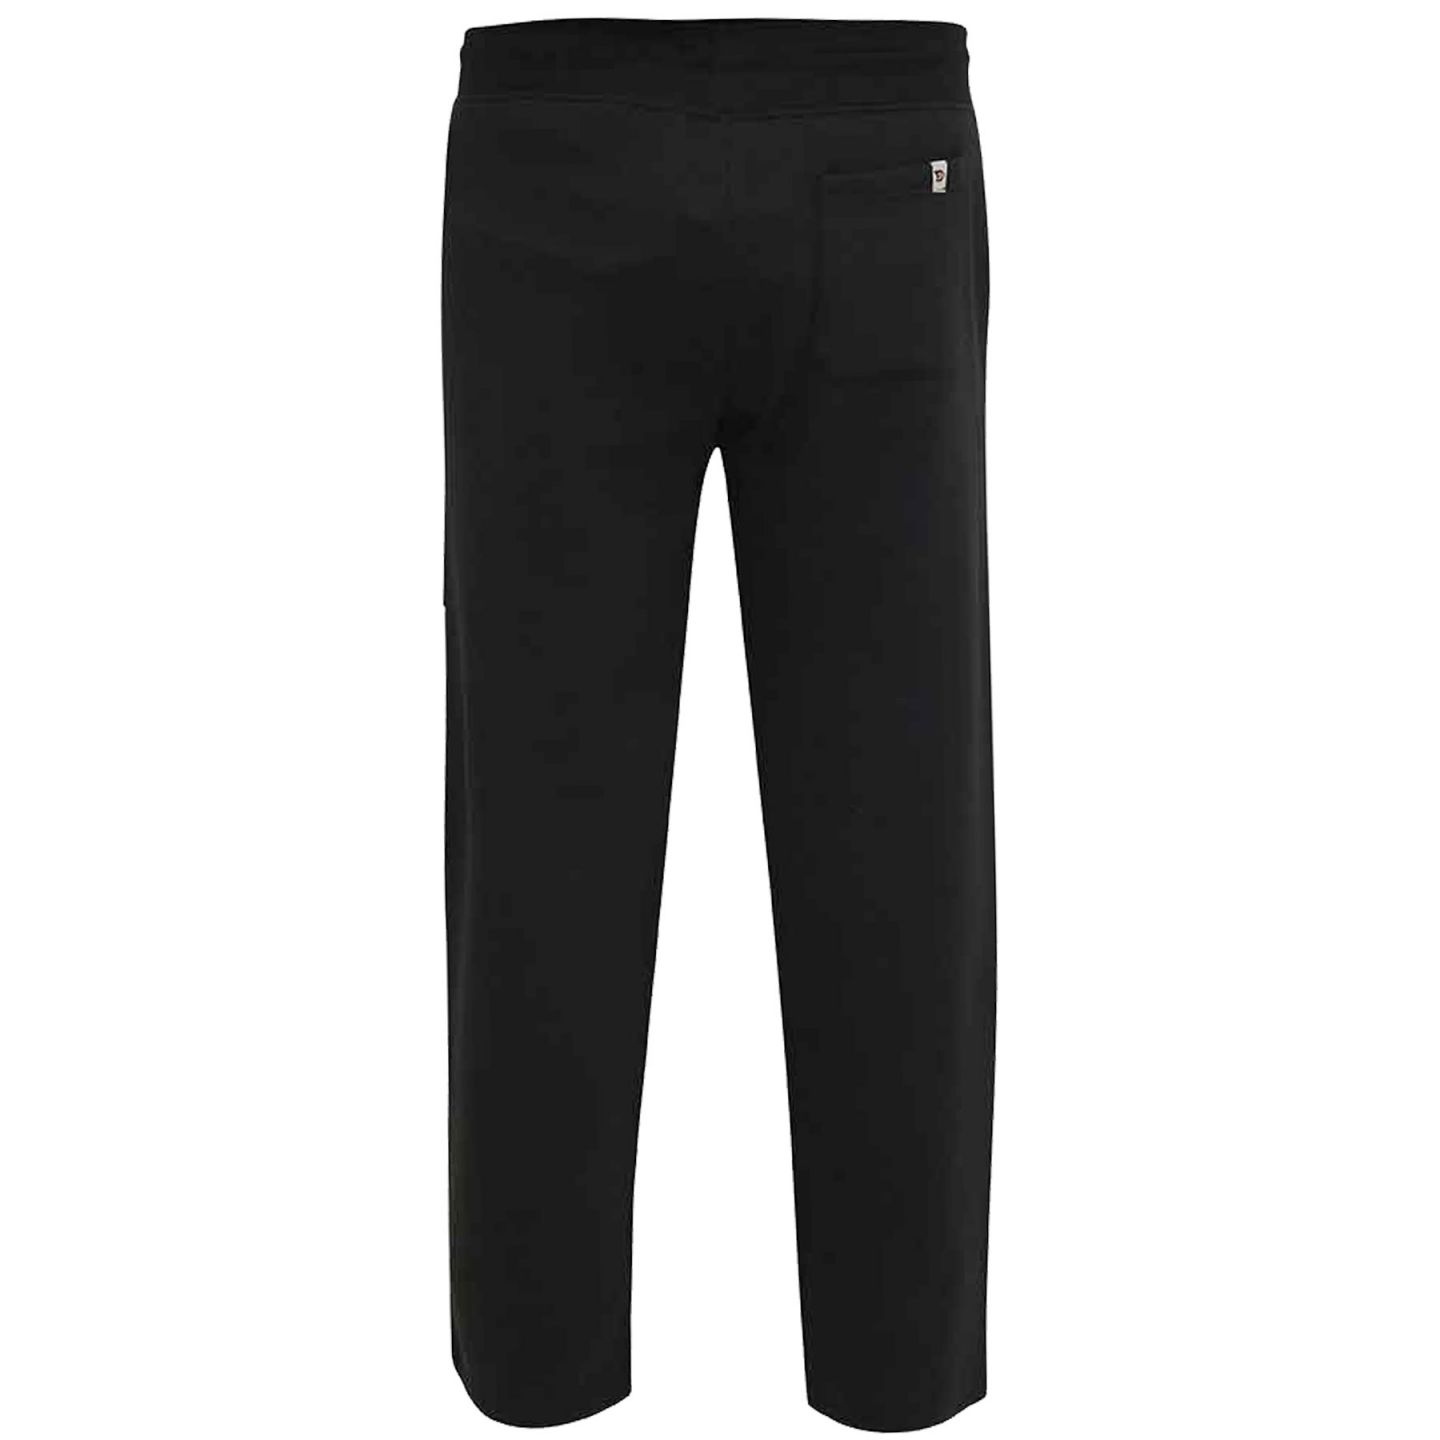 Pantalon de jogging avec ceinture élastique unie Noir Pantalon